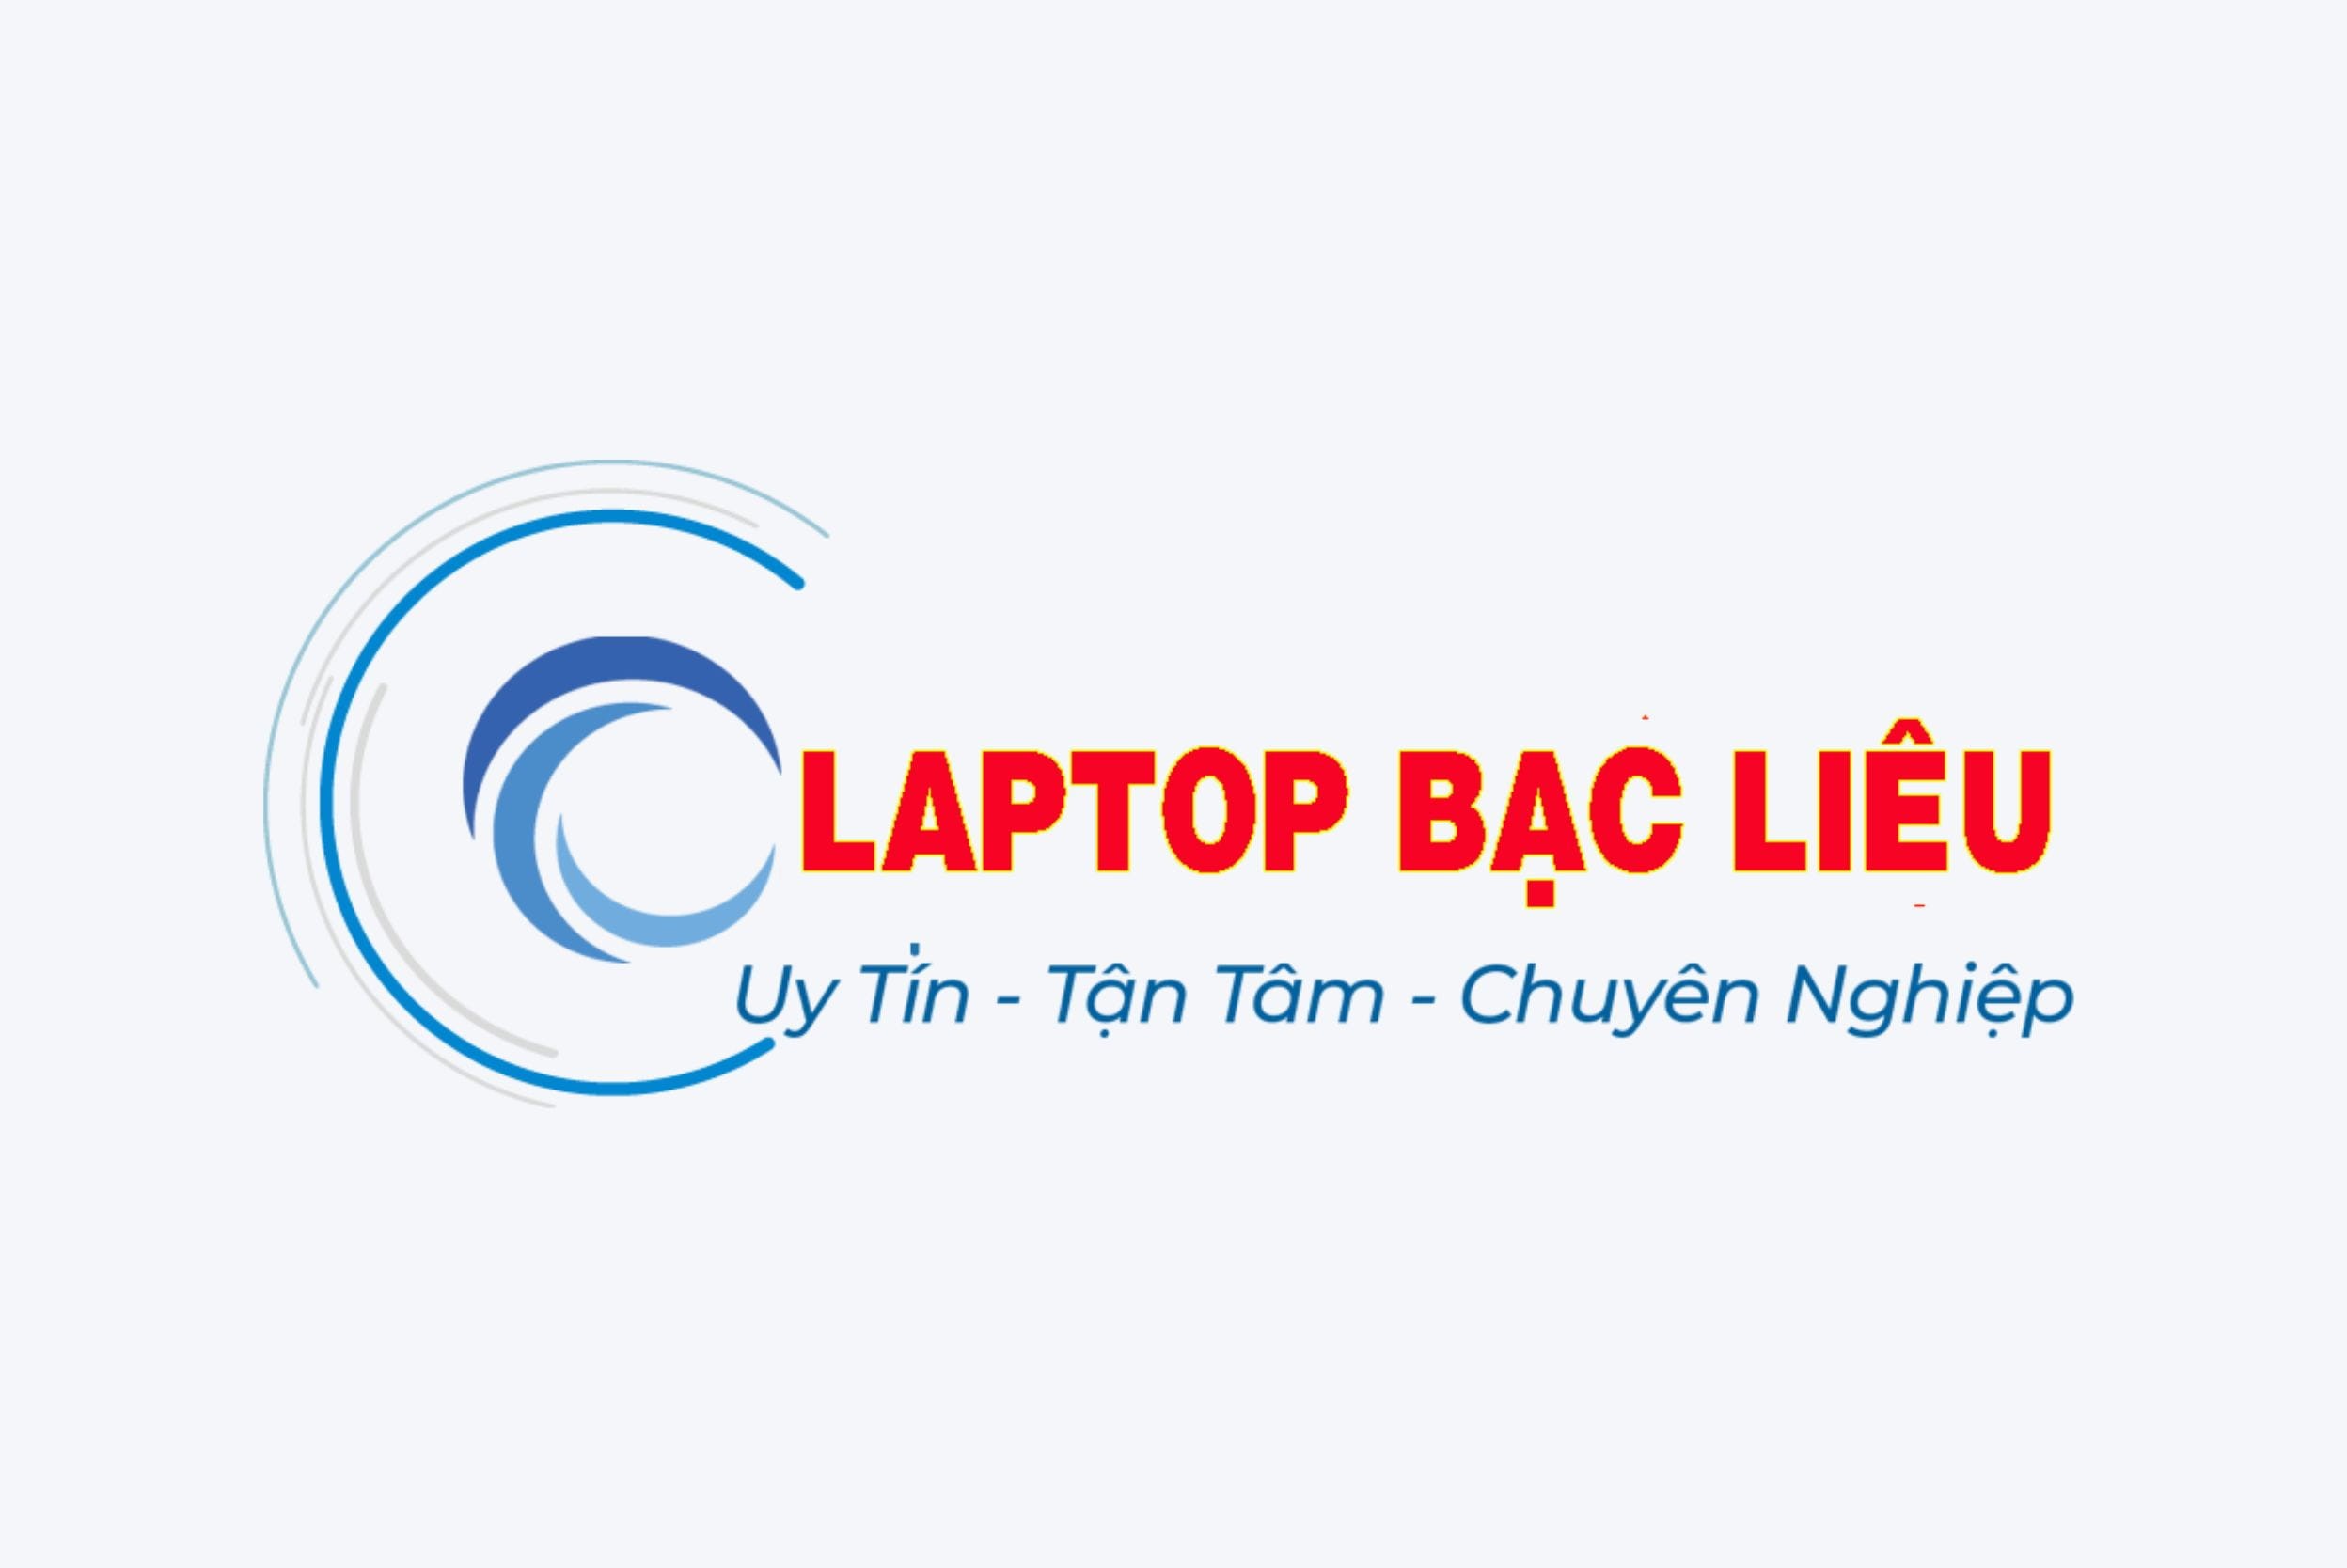 laptop-bac-lieu-logo